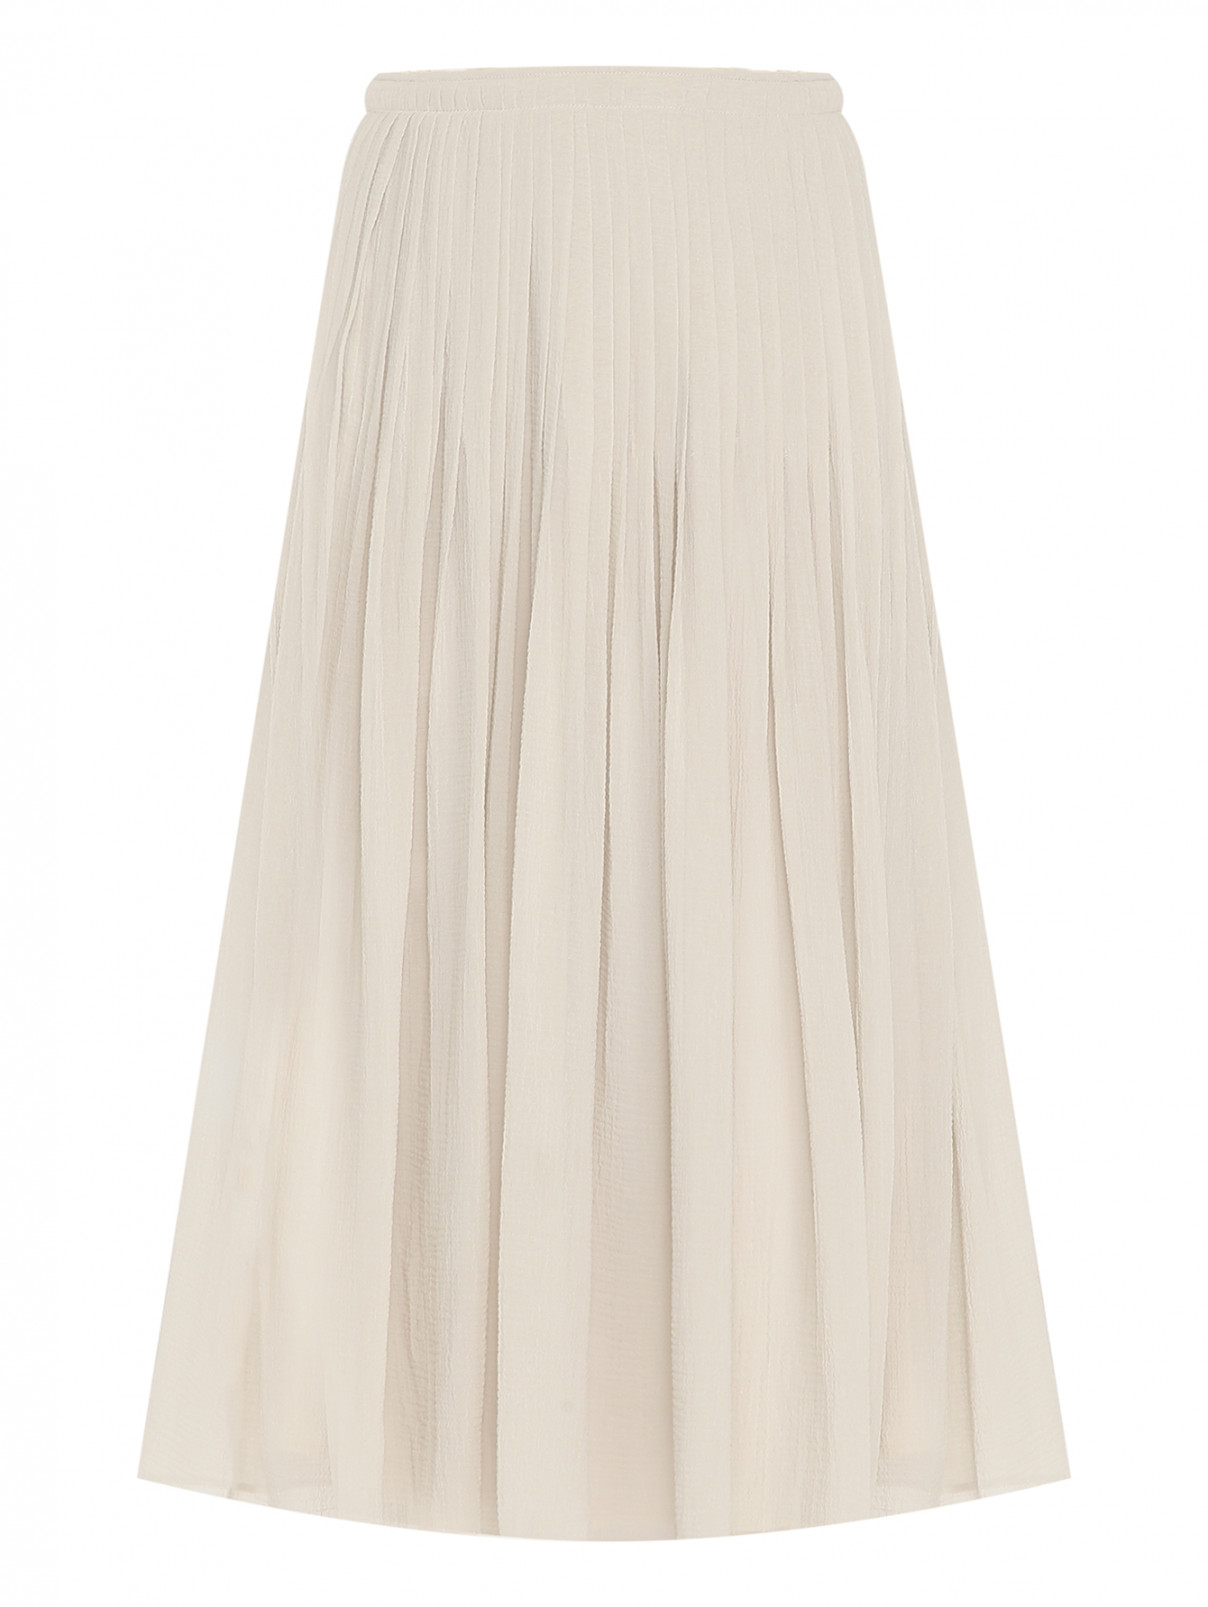 Плиссированная юбка из хлопка и шелка Fabiana Filippi  –  Общий вид